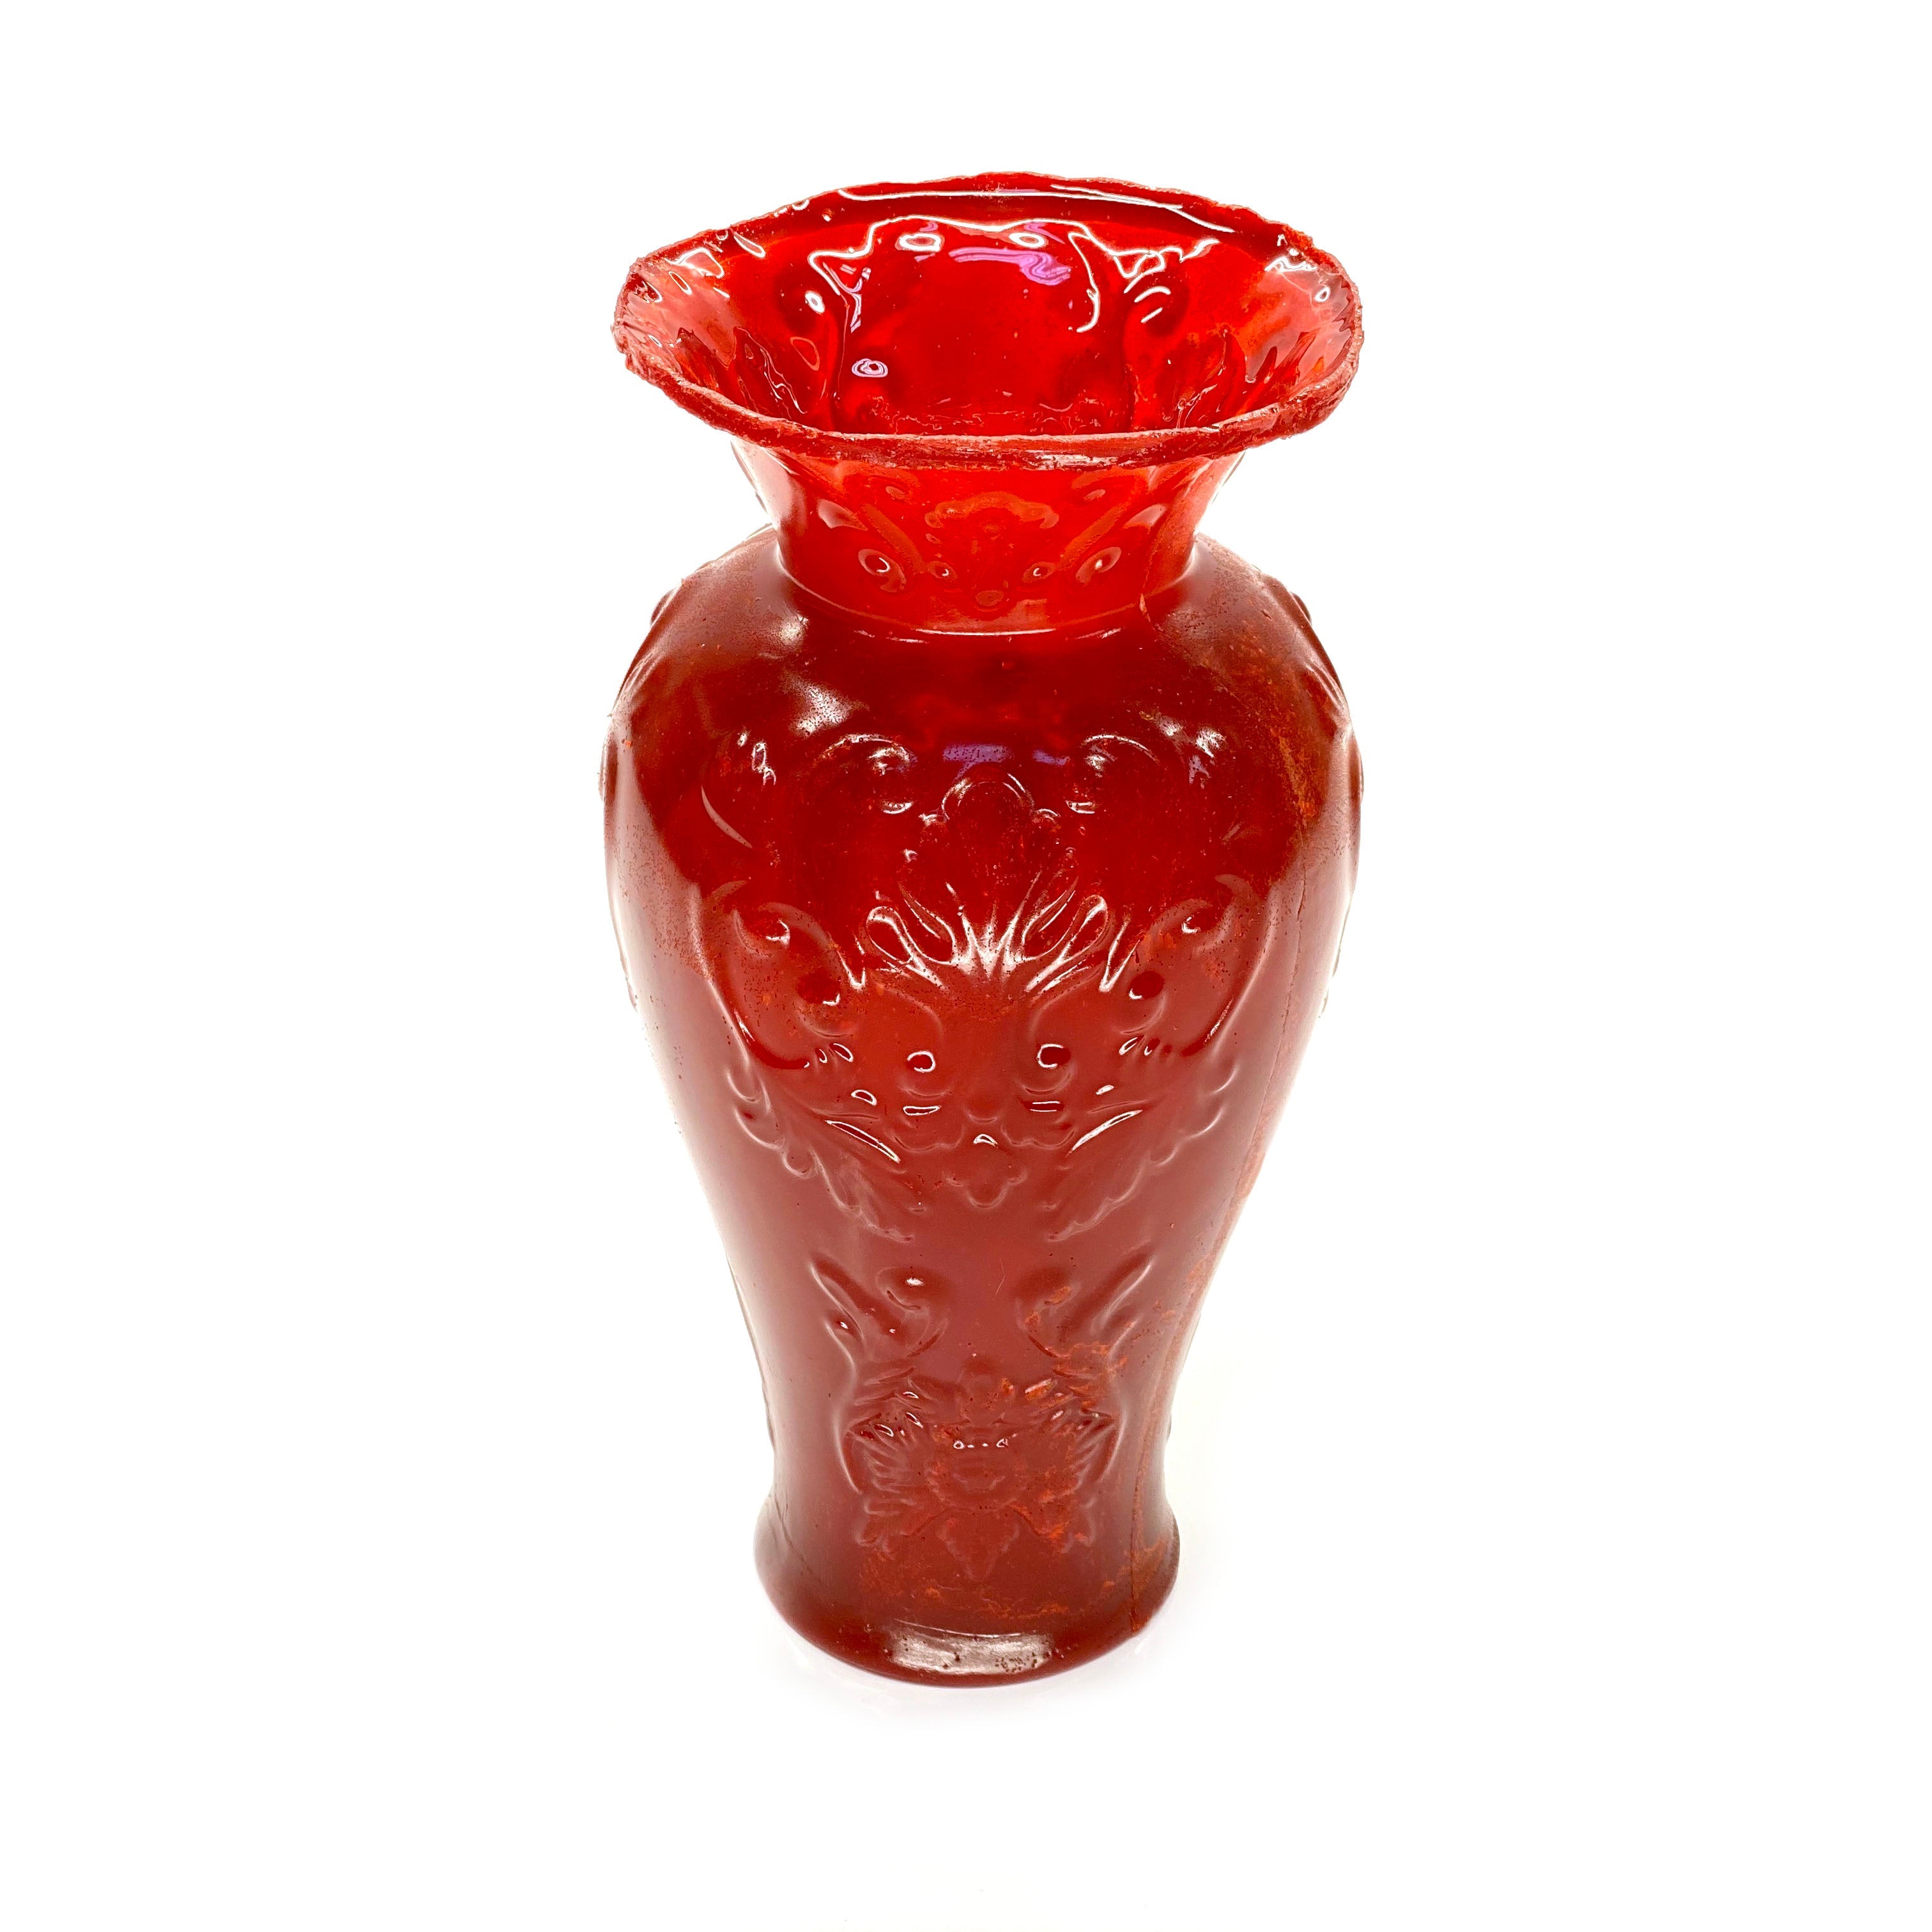 SMASHProps Breakaway Large Georgian Vase 7.5 Inch - RED opaque - Red Opaque